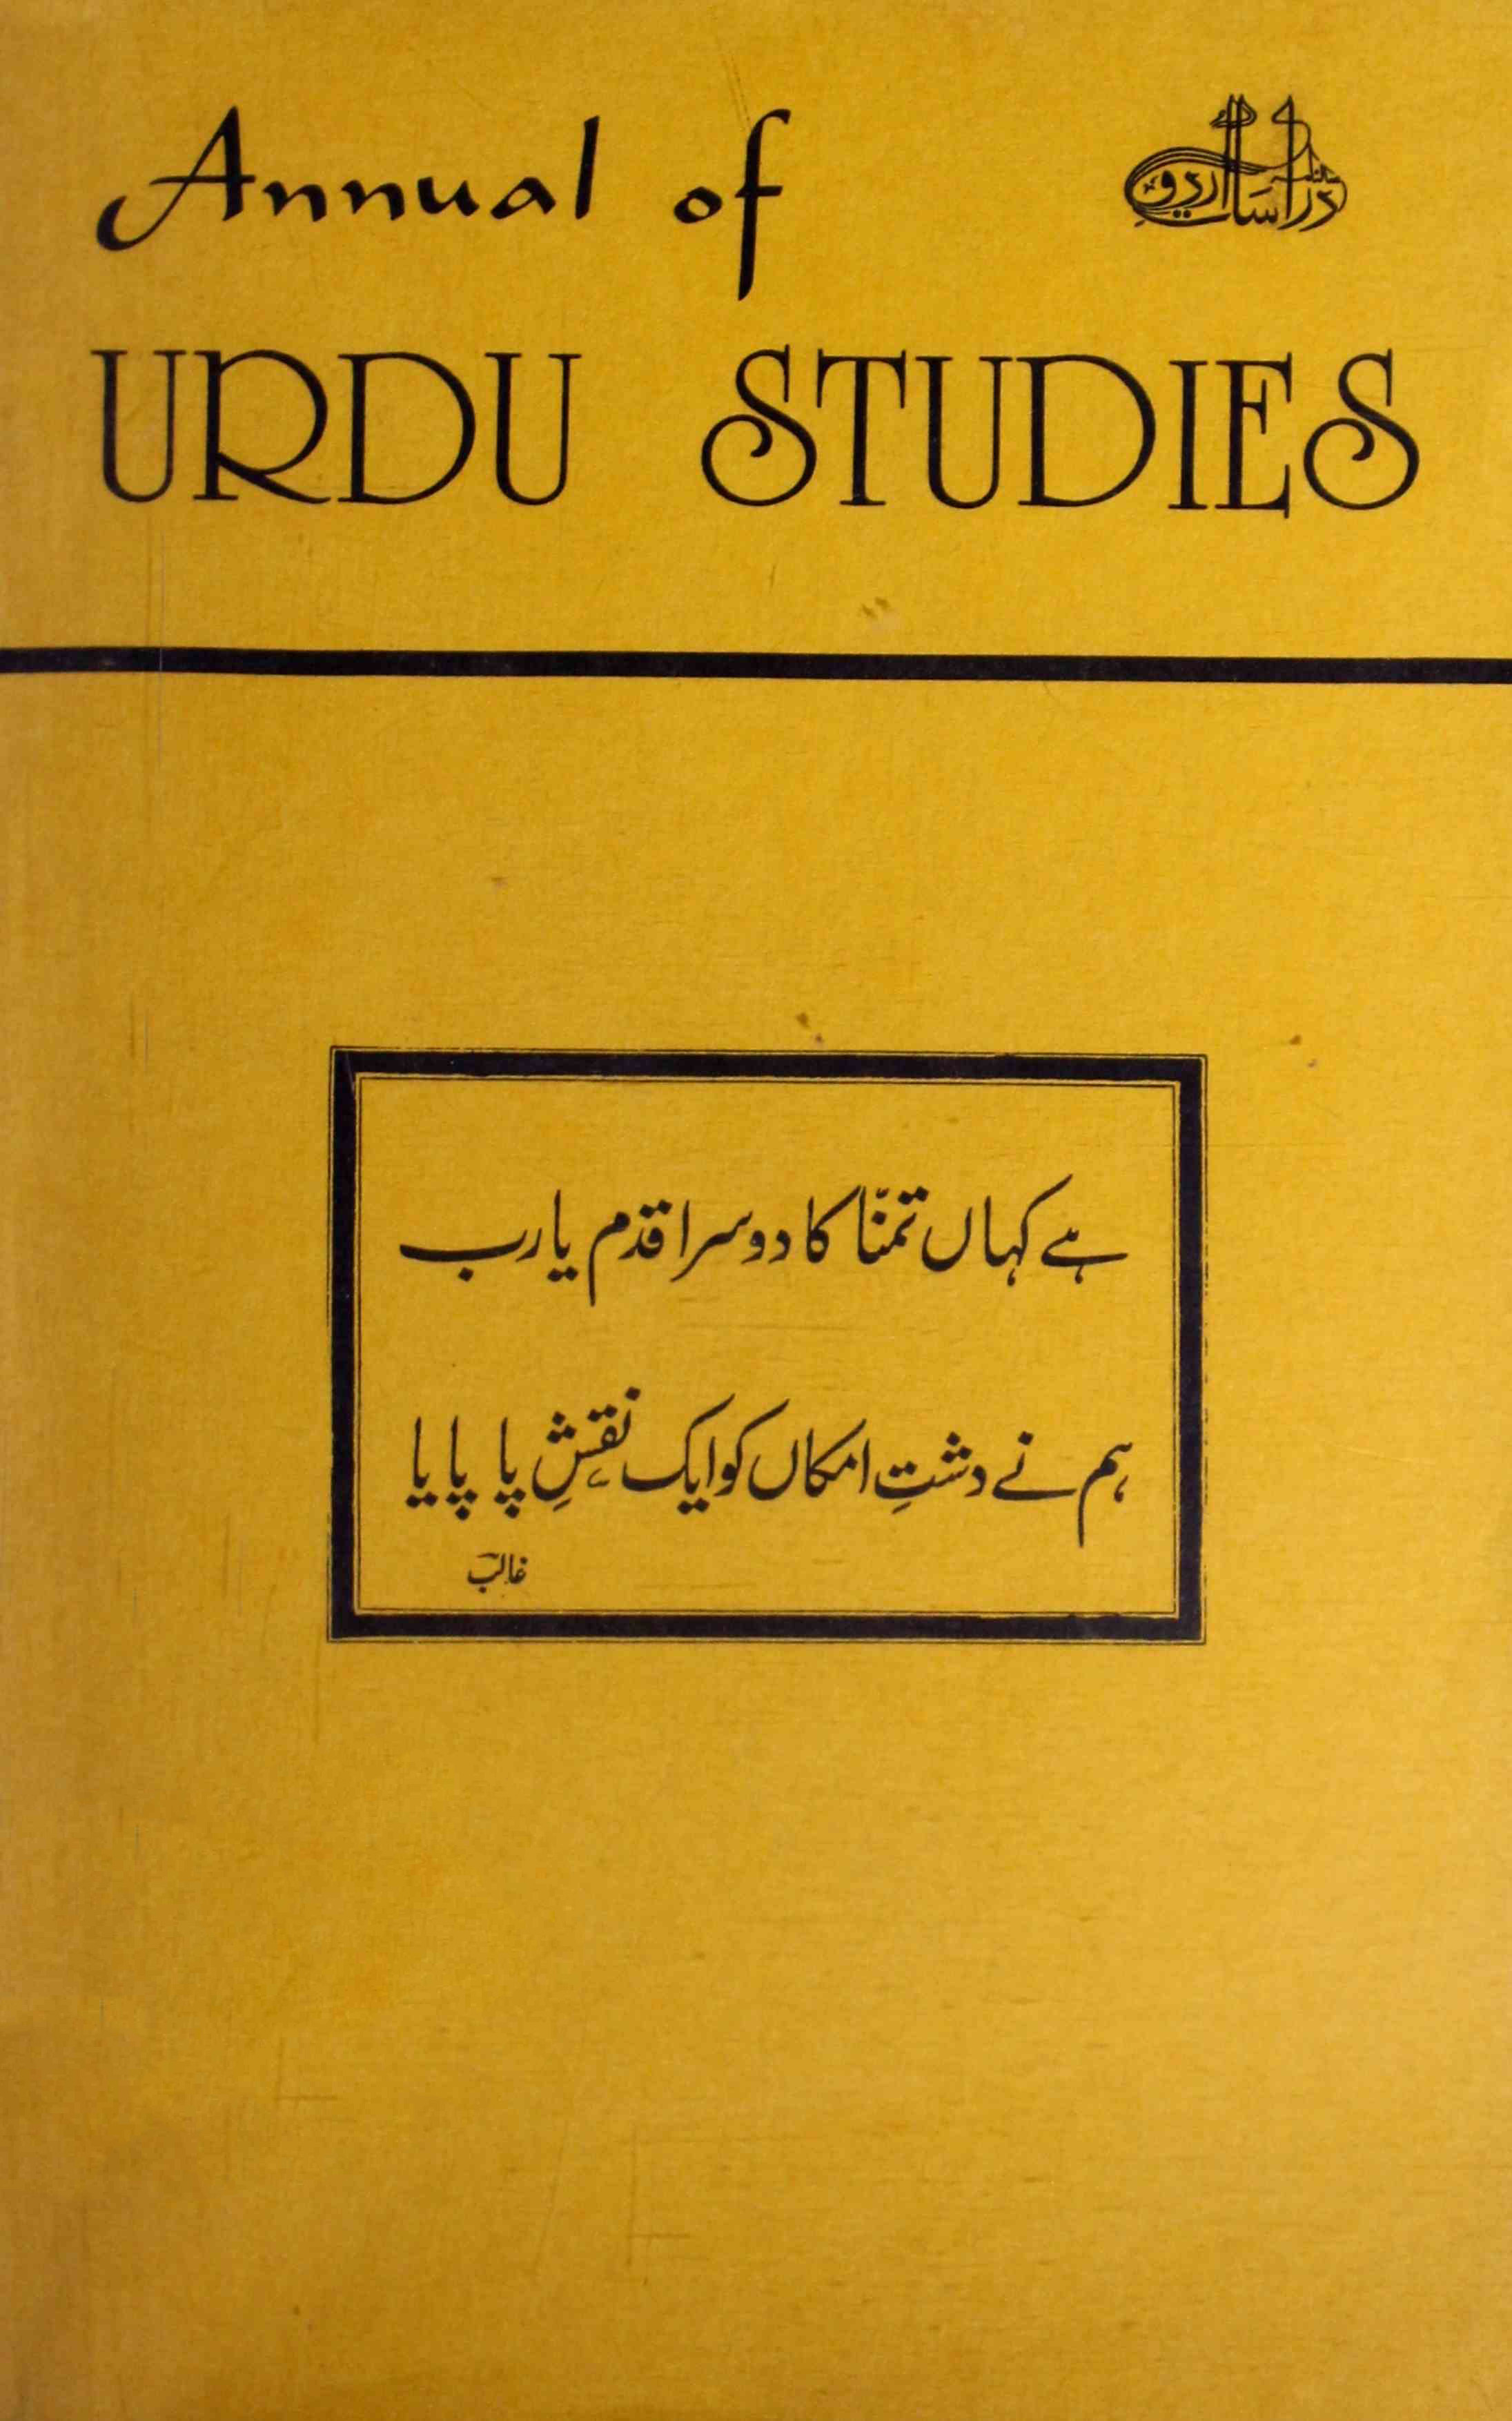 Annual of Urdu Studies